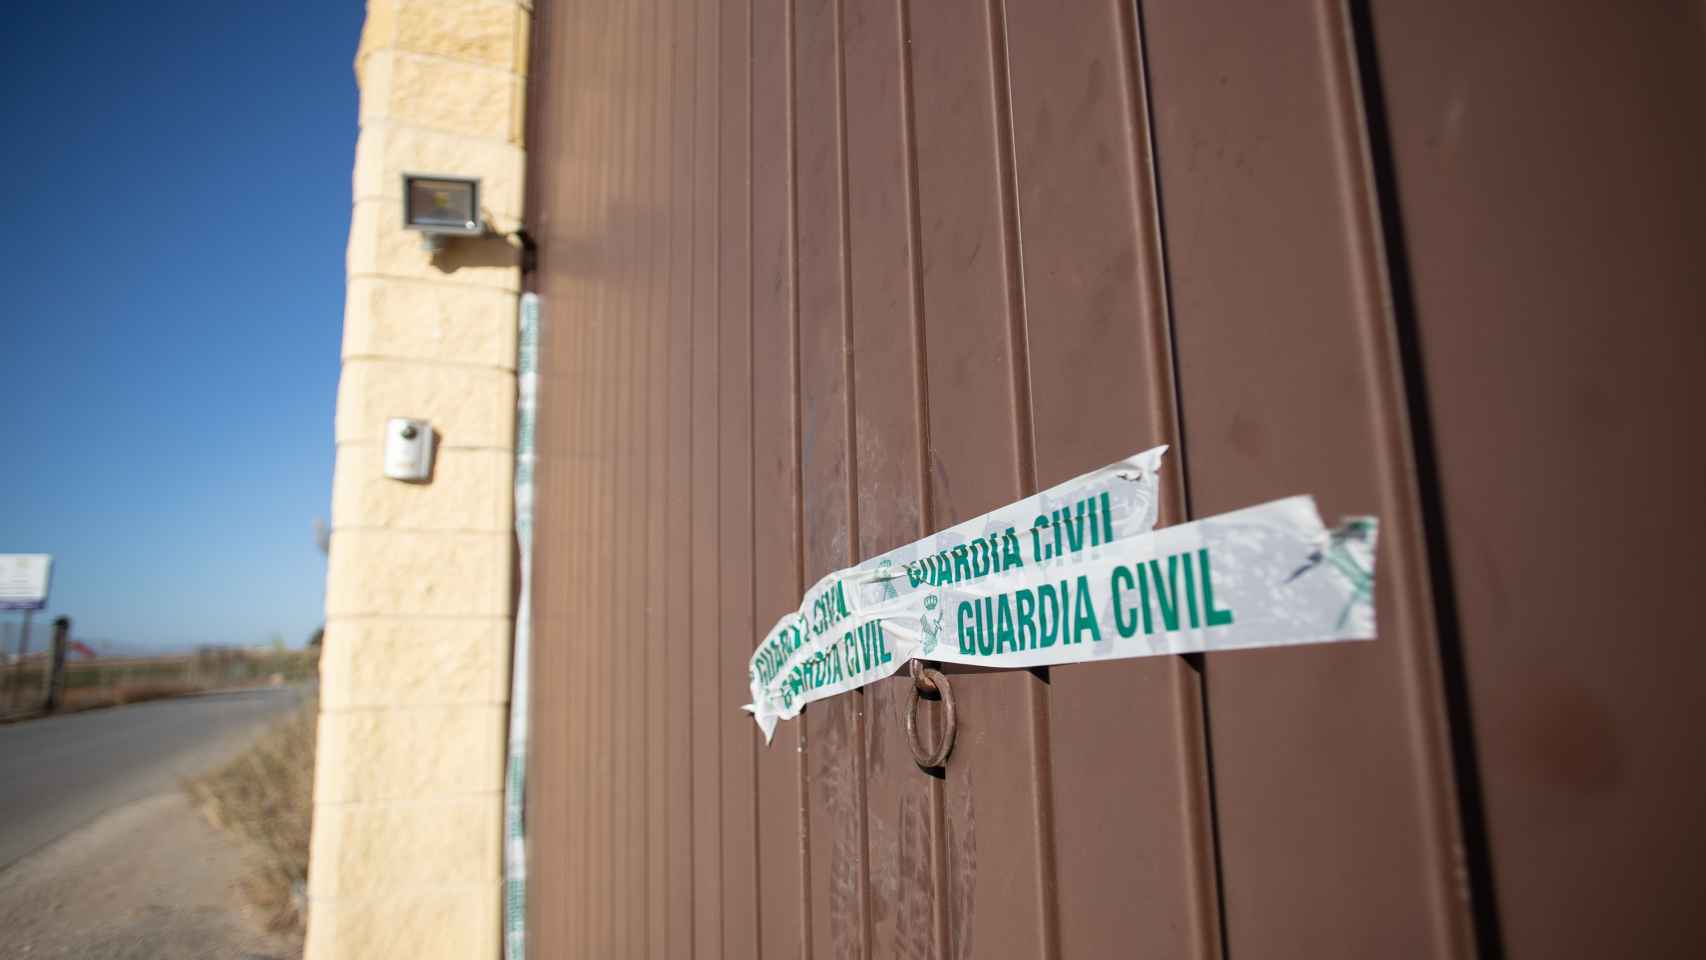 Portón de entrada a la vivienda en la que sucedieron los hechos, con un precinto de la Guardia Civil.